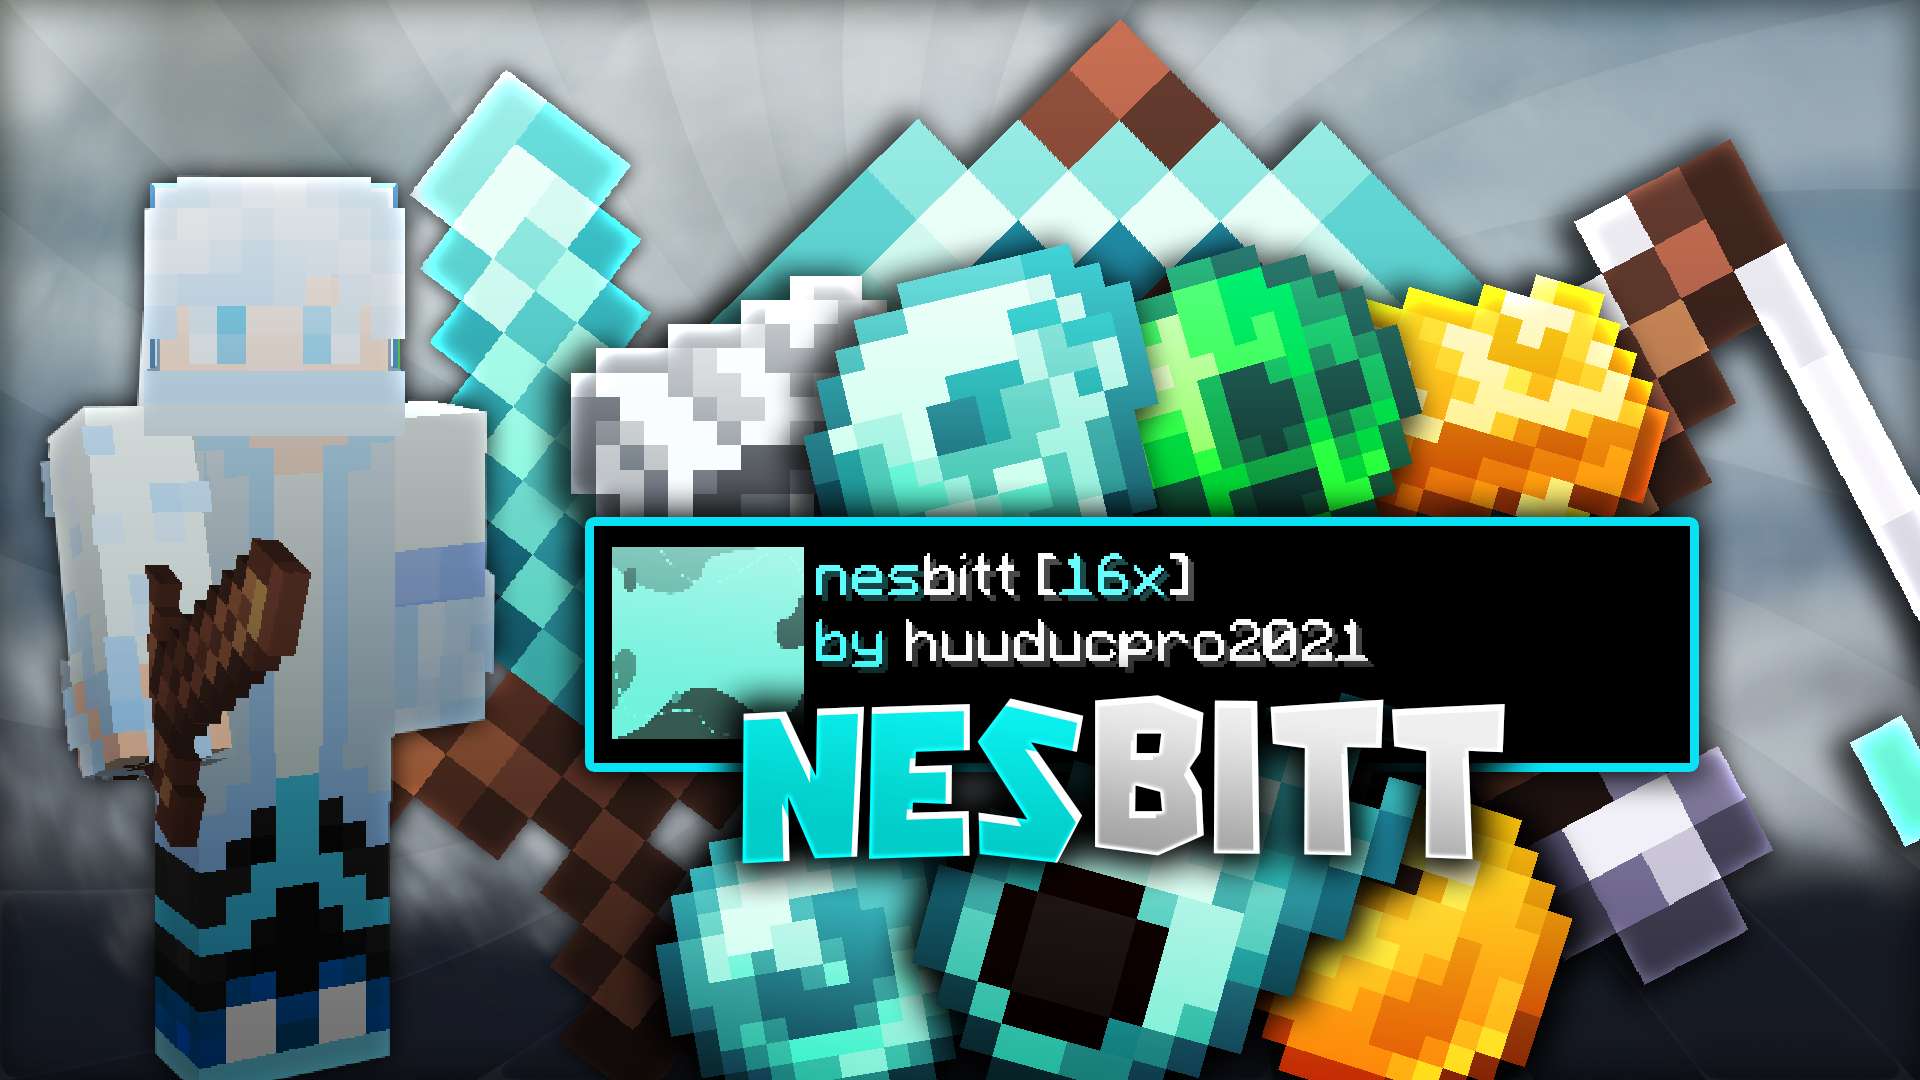 Nesbitt  16x by huuducpro2021 on PvPRP